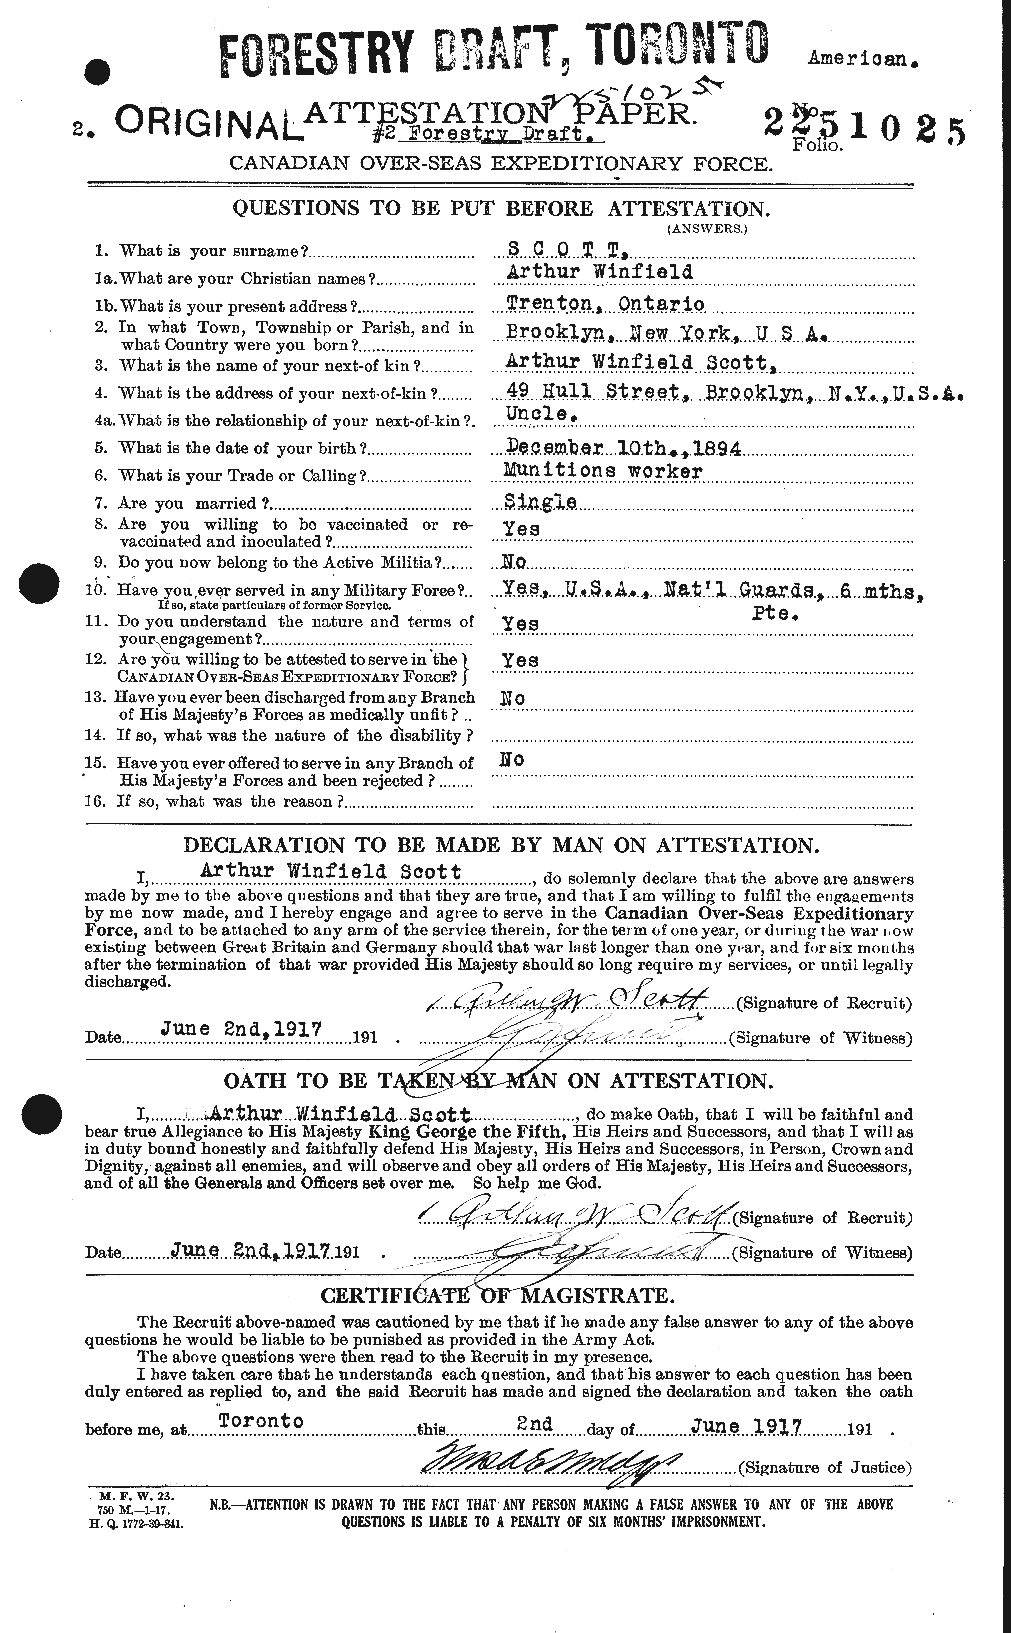 Dossiers du Personnel de la Première Guerre mondiale - CEC 086227a